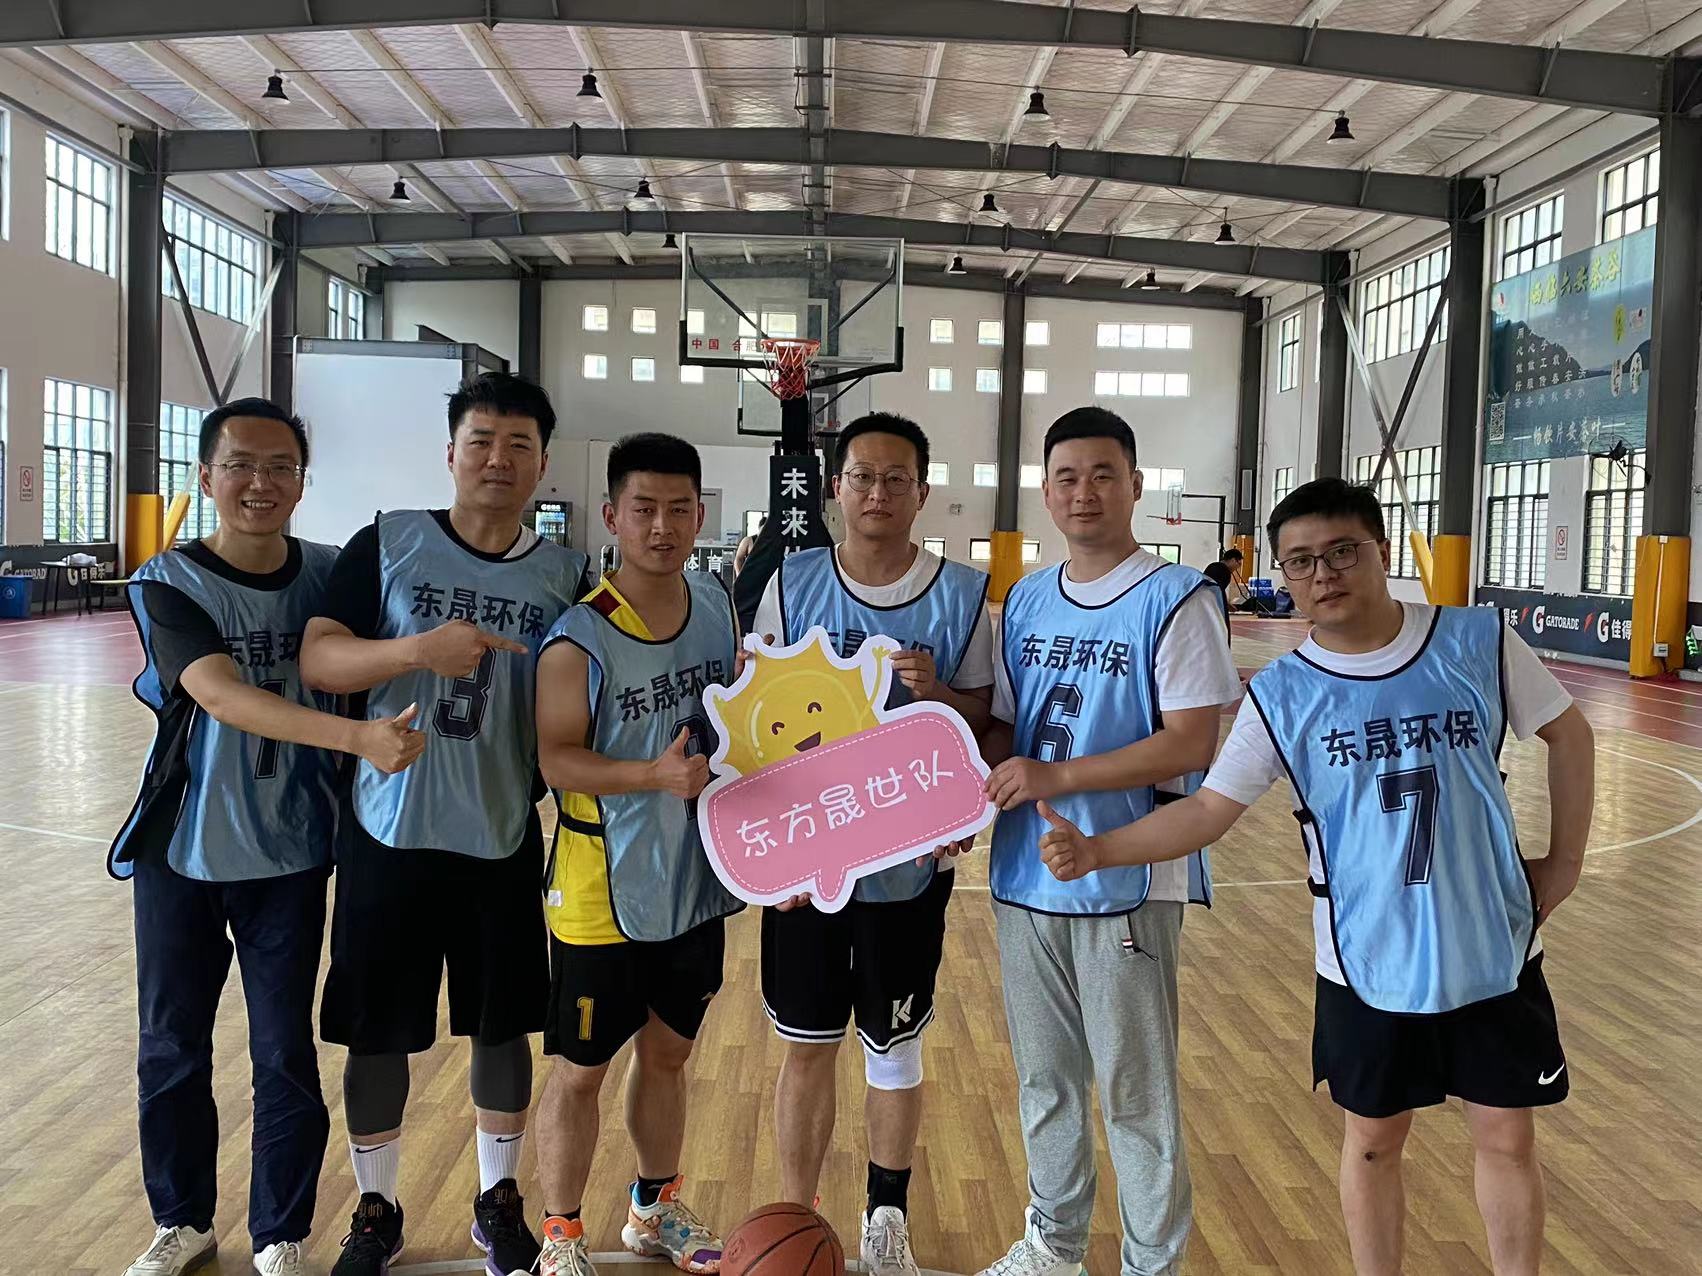 顽强拼搏，迎“篮”而上|东晟环保集团第二届篮球赛昨日正式开赛！